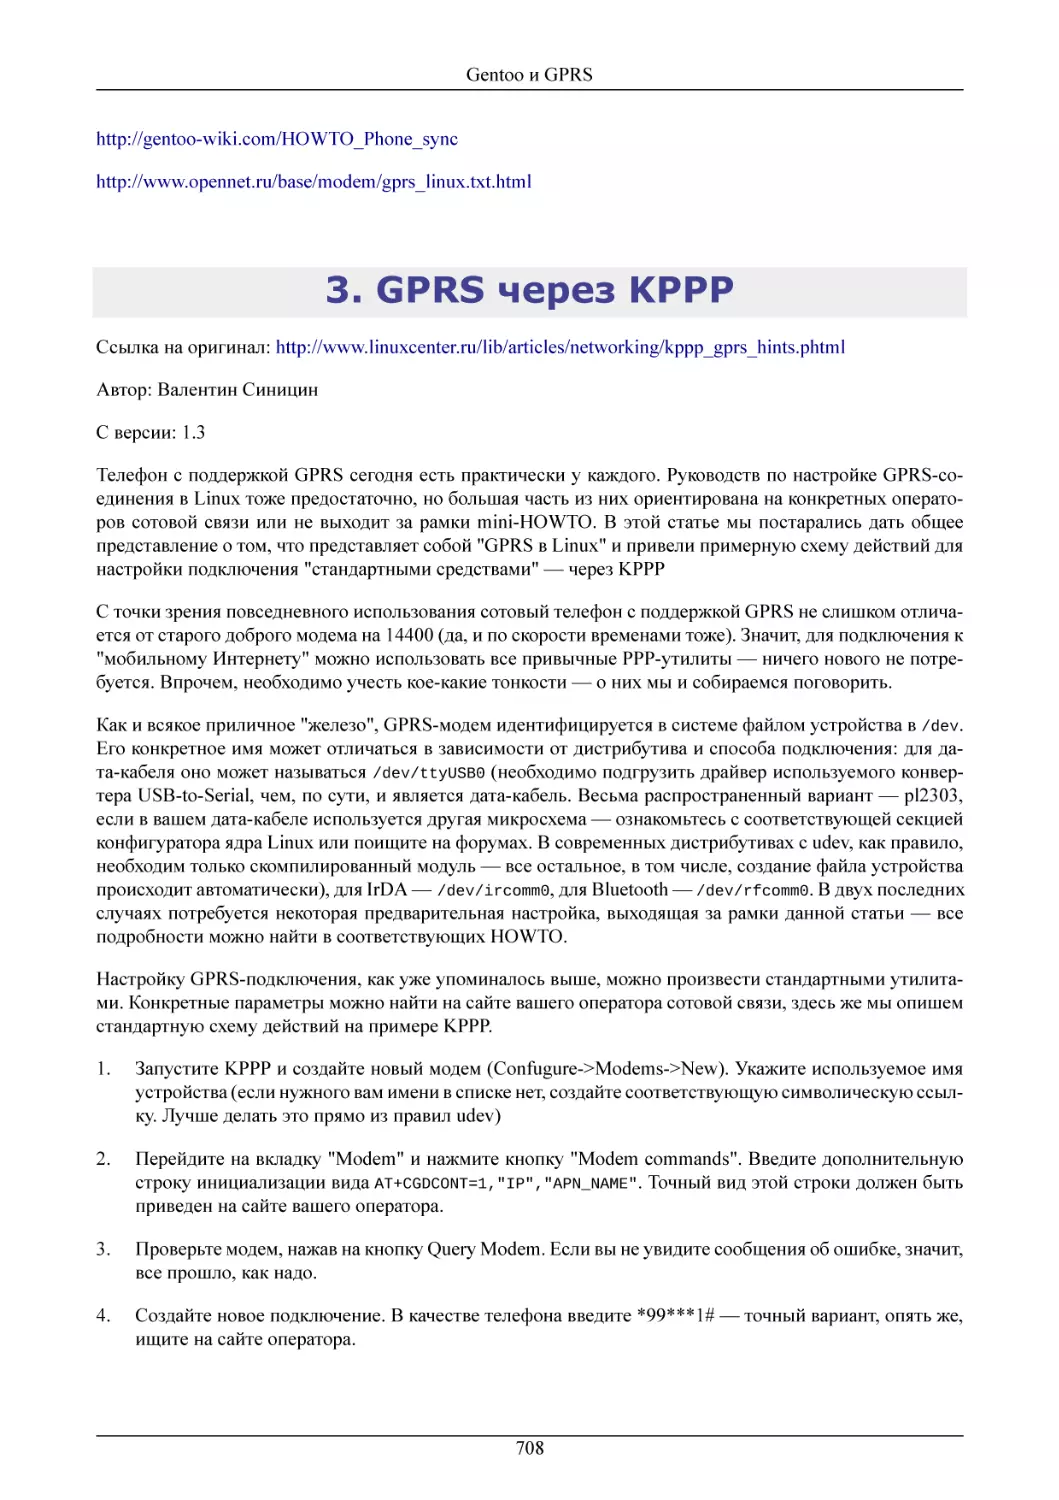 GPRS через KPPP